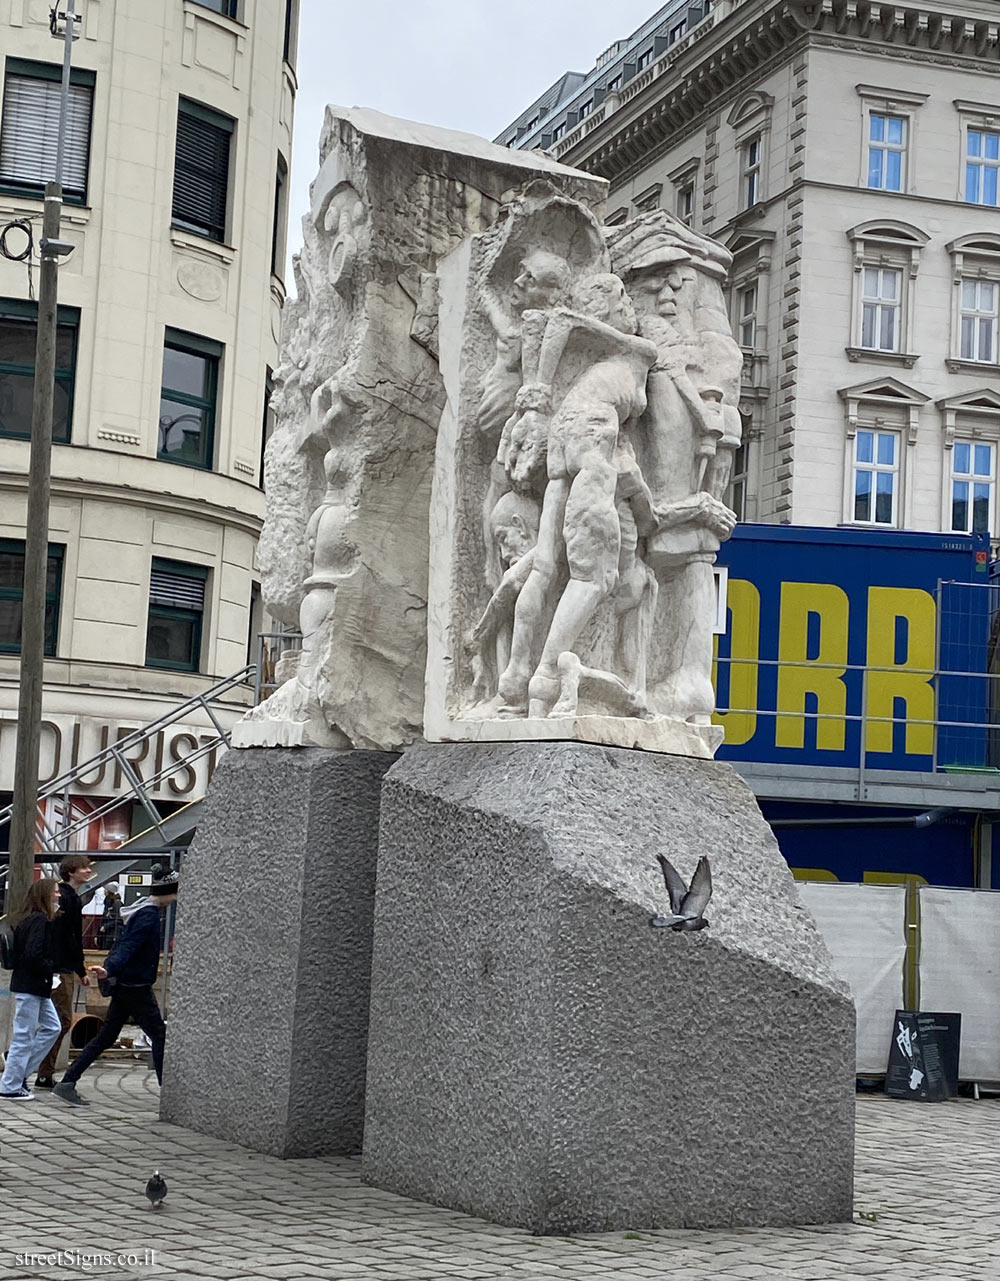 Vienna - The monument against war and fascism - Albertinapl. 1, 1010 Wien, Austria